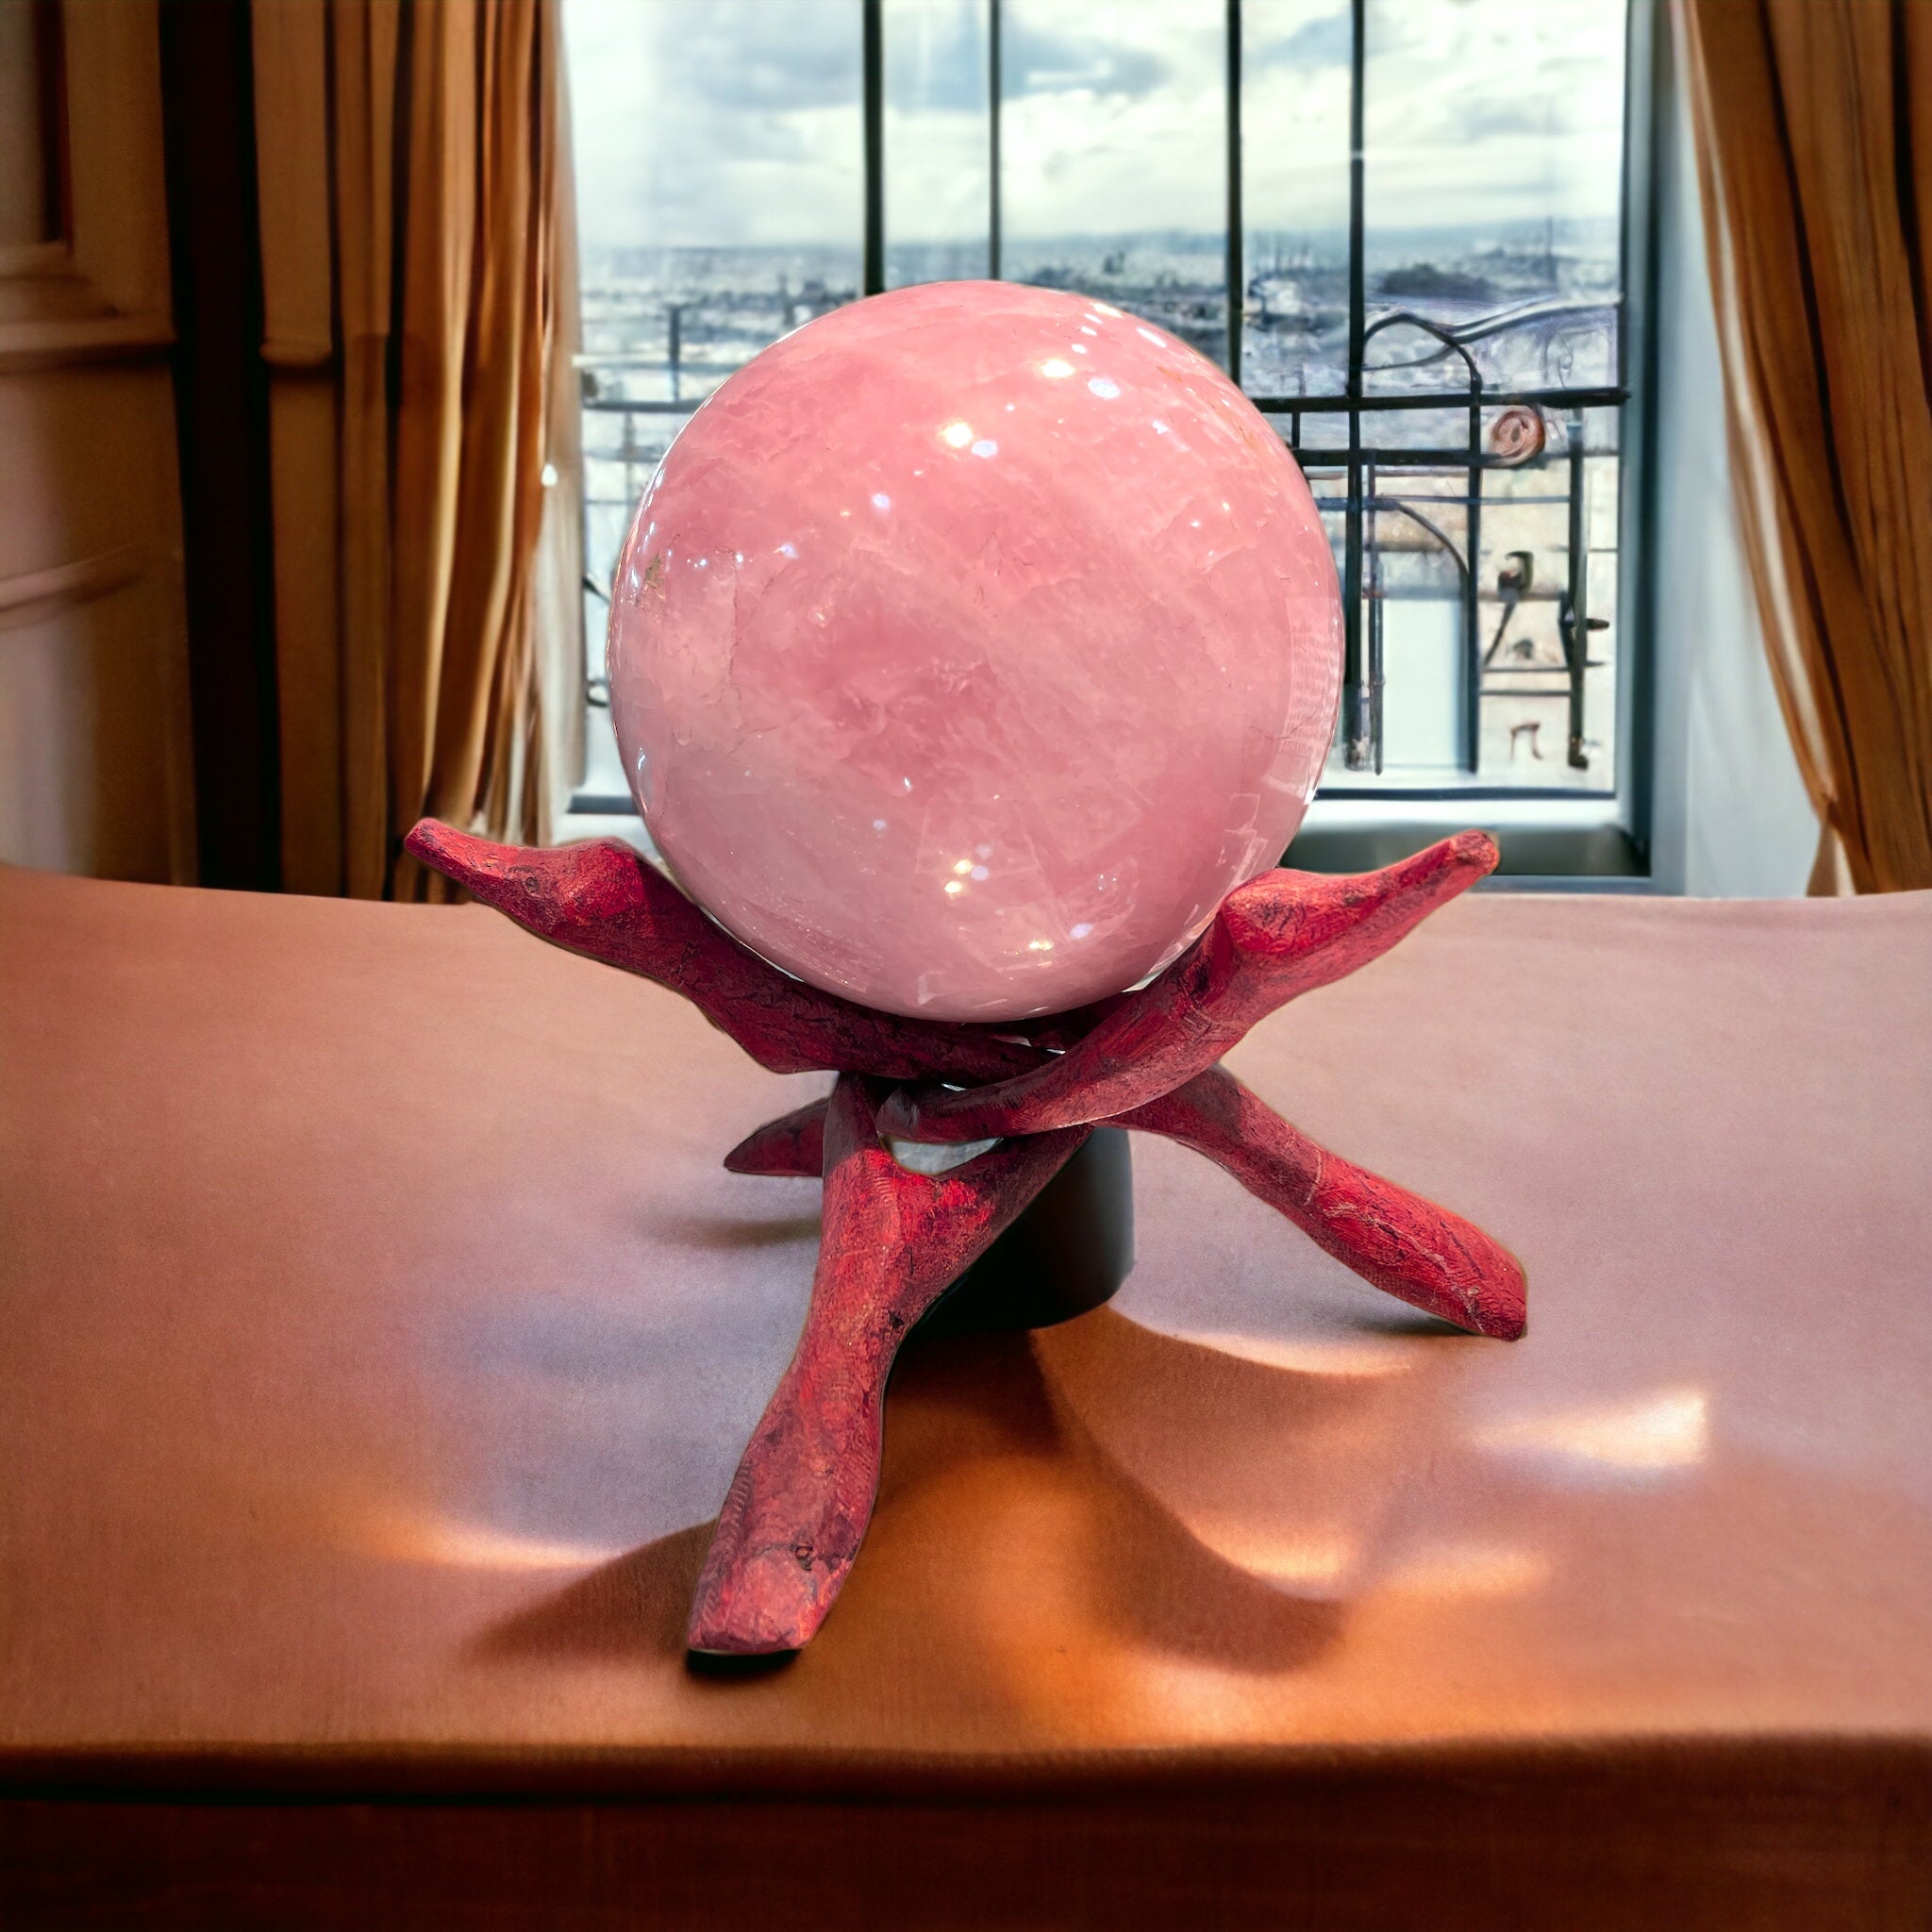 Rose Quartz Sphere 2710 Grams